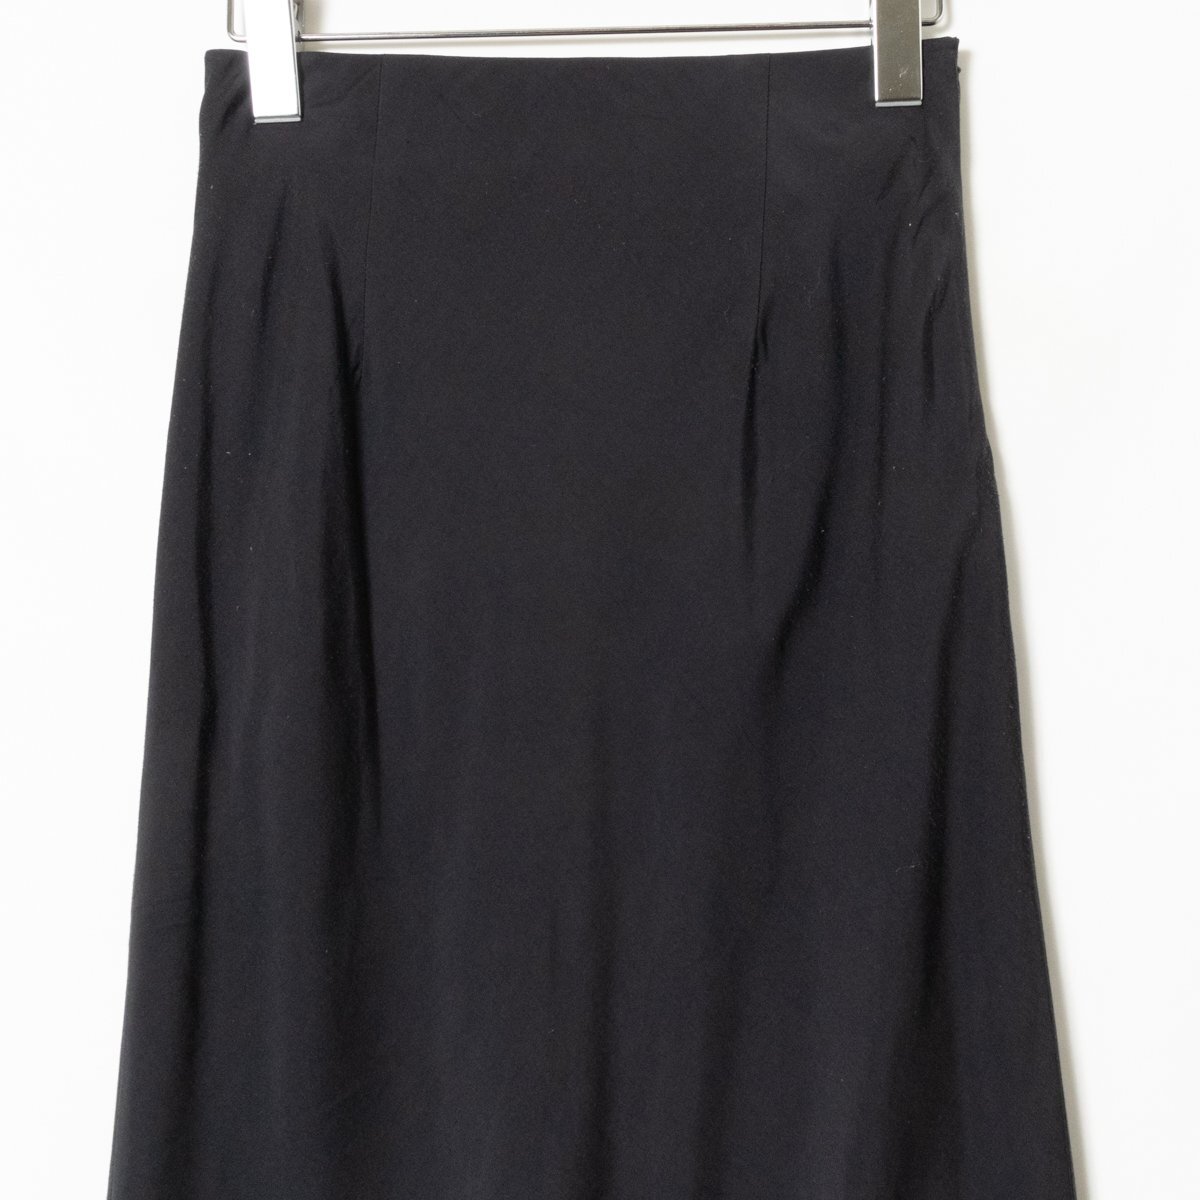 FRAY I.D юбка f Ray I ti- низ черный боковой застежка-молния красивый . casual одноцветный длинный длина подкладка есть тугой 0 сделано в Японии 